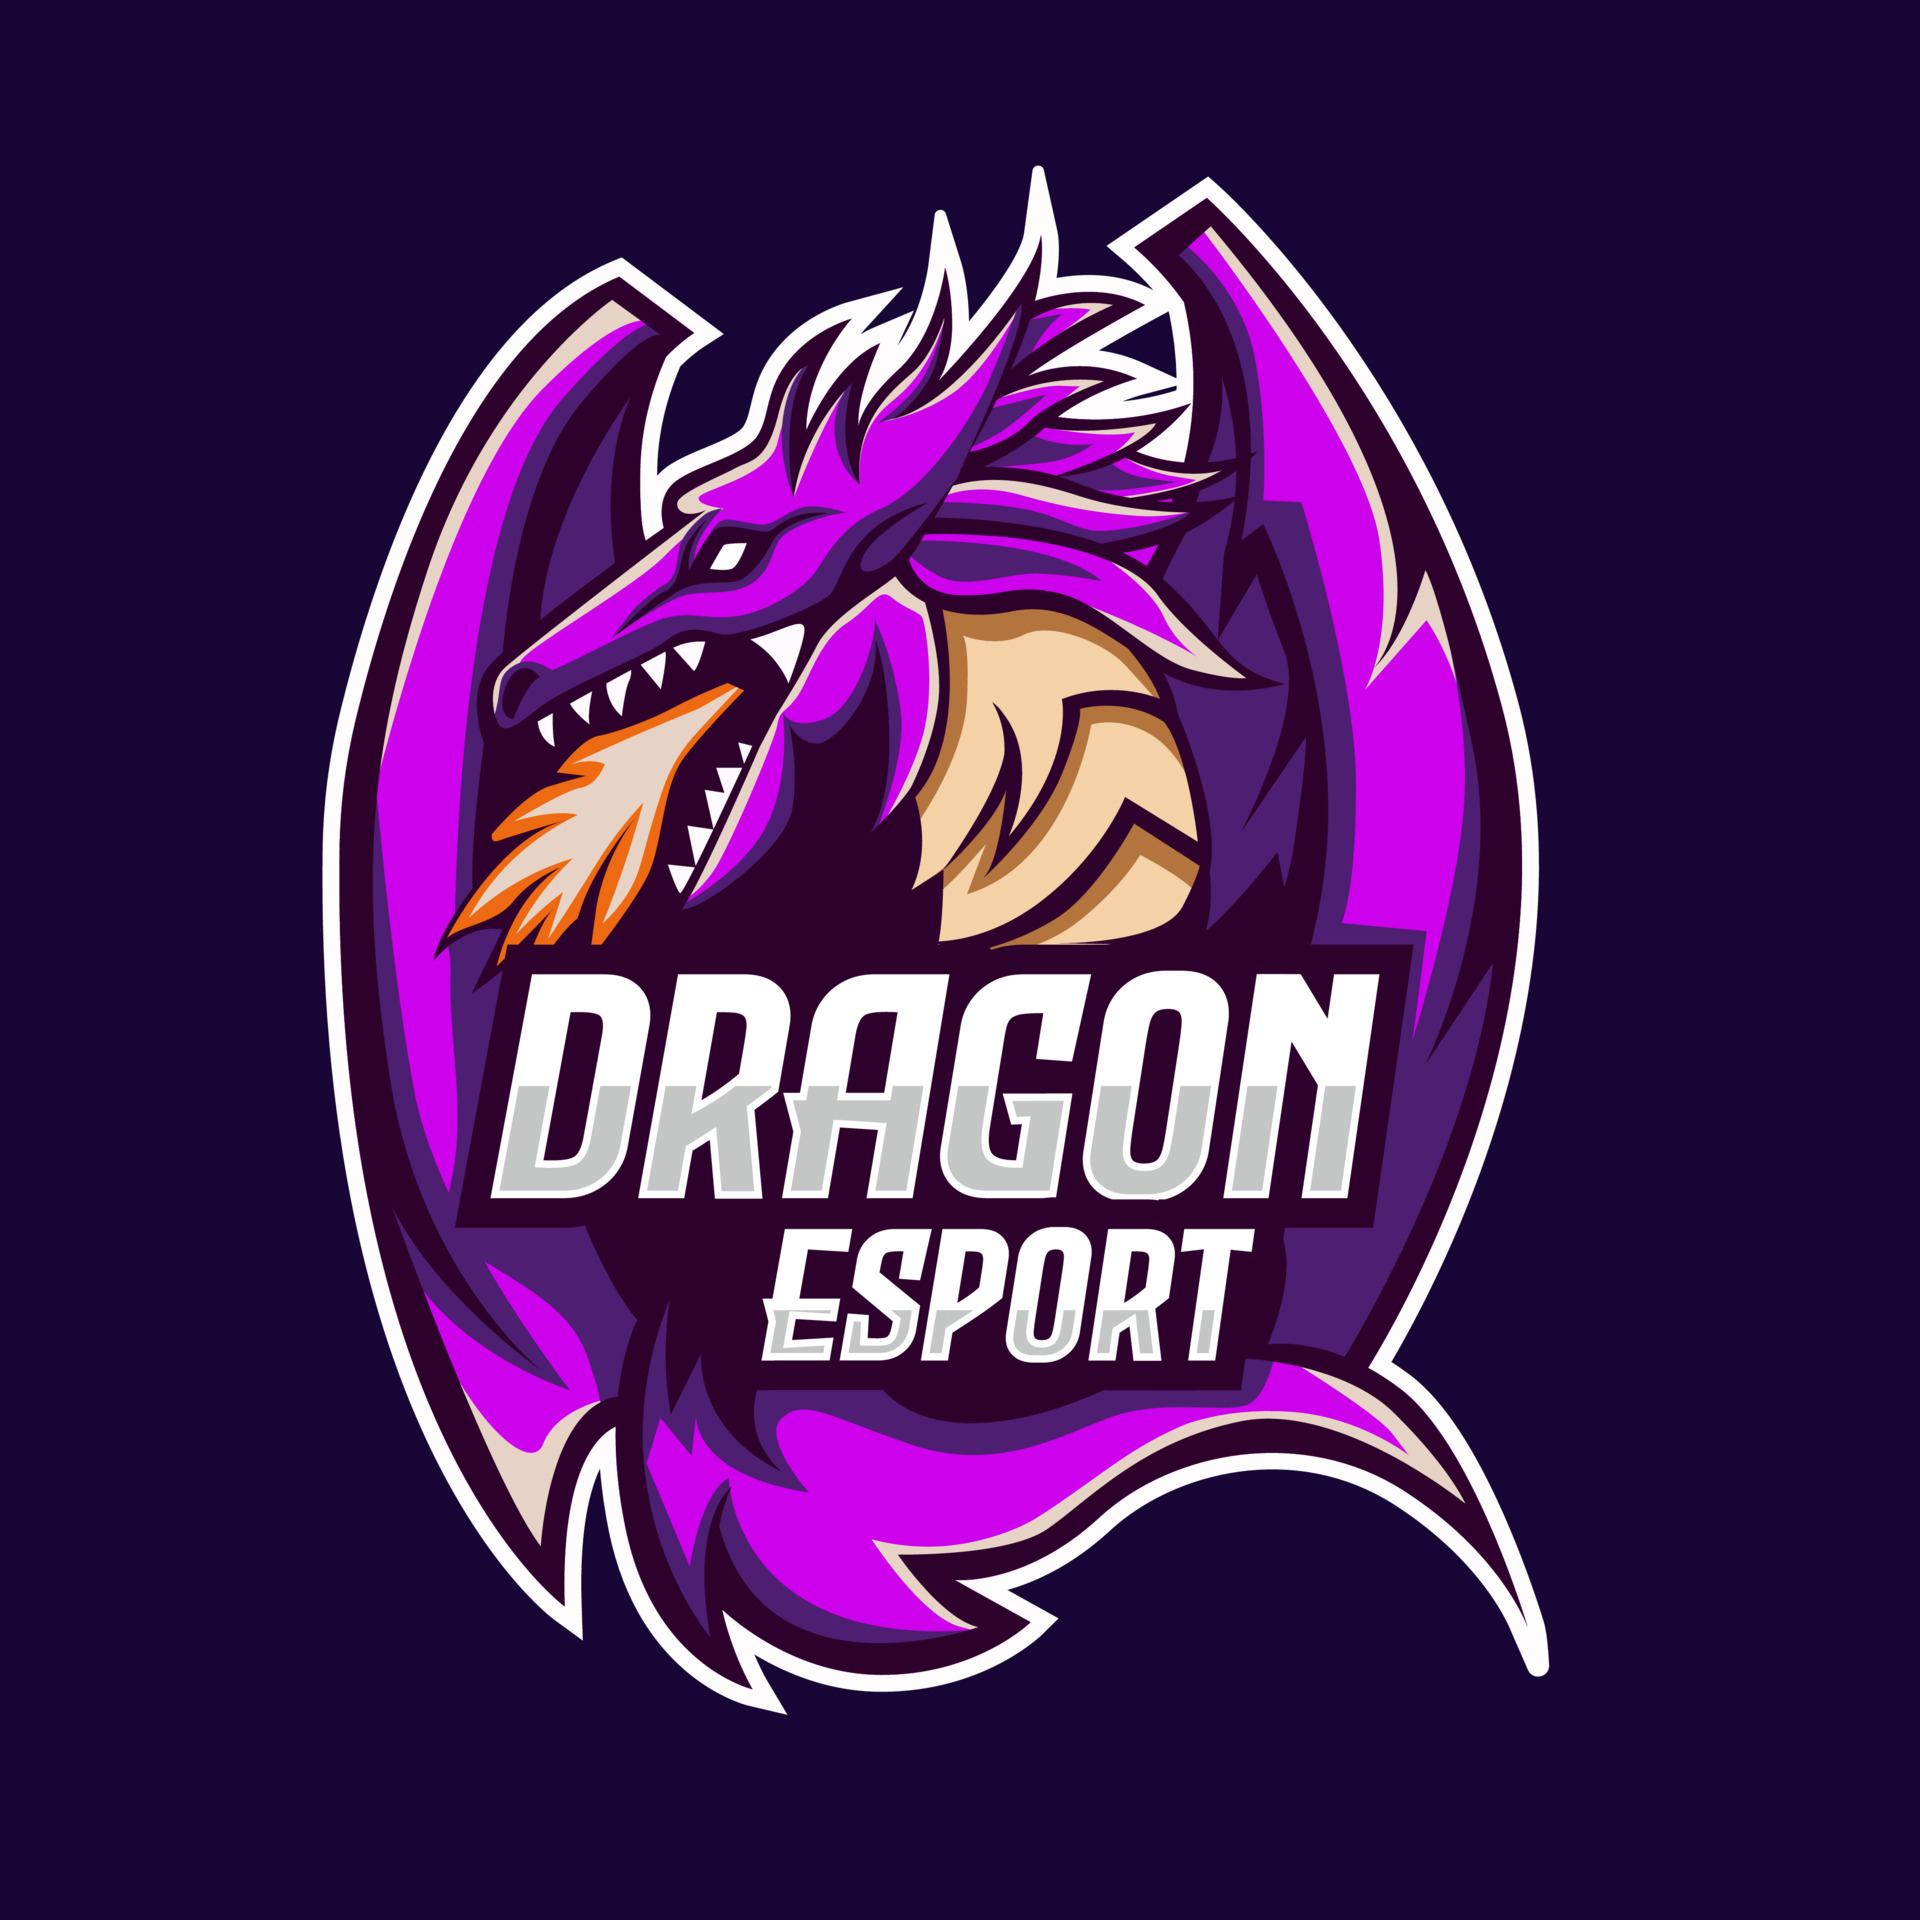 Logotipo do mascote do dragão roxo esport para a equipe de jogo